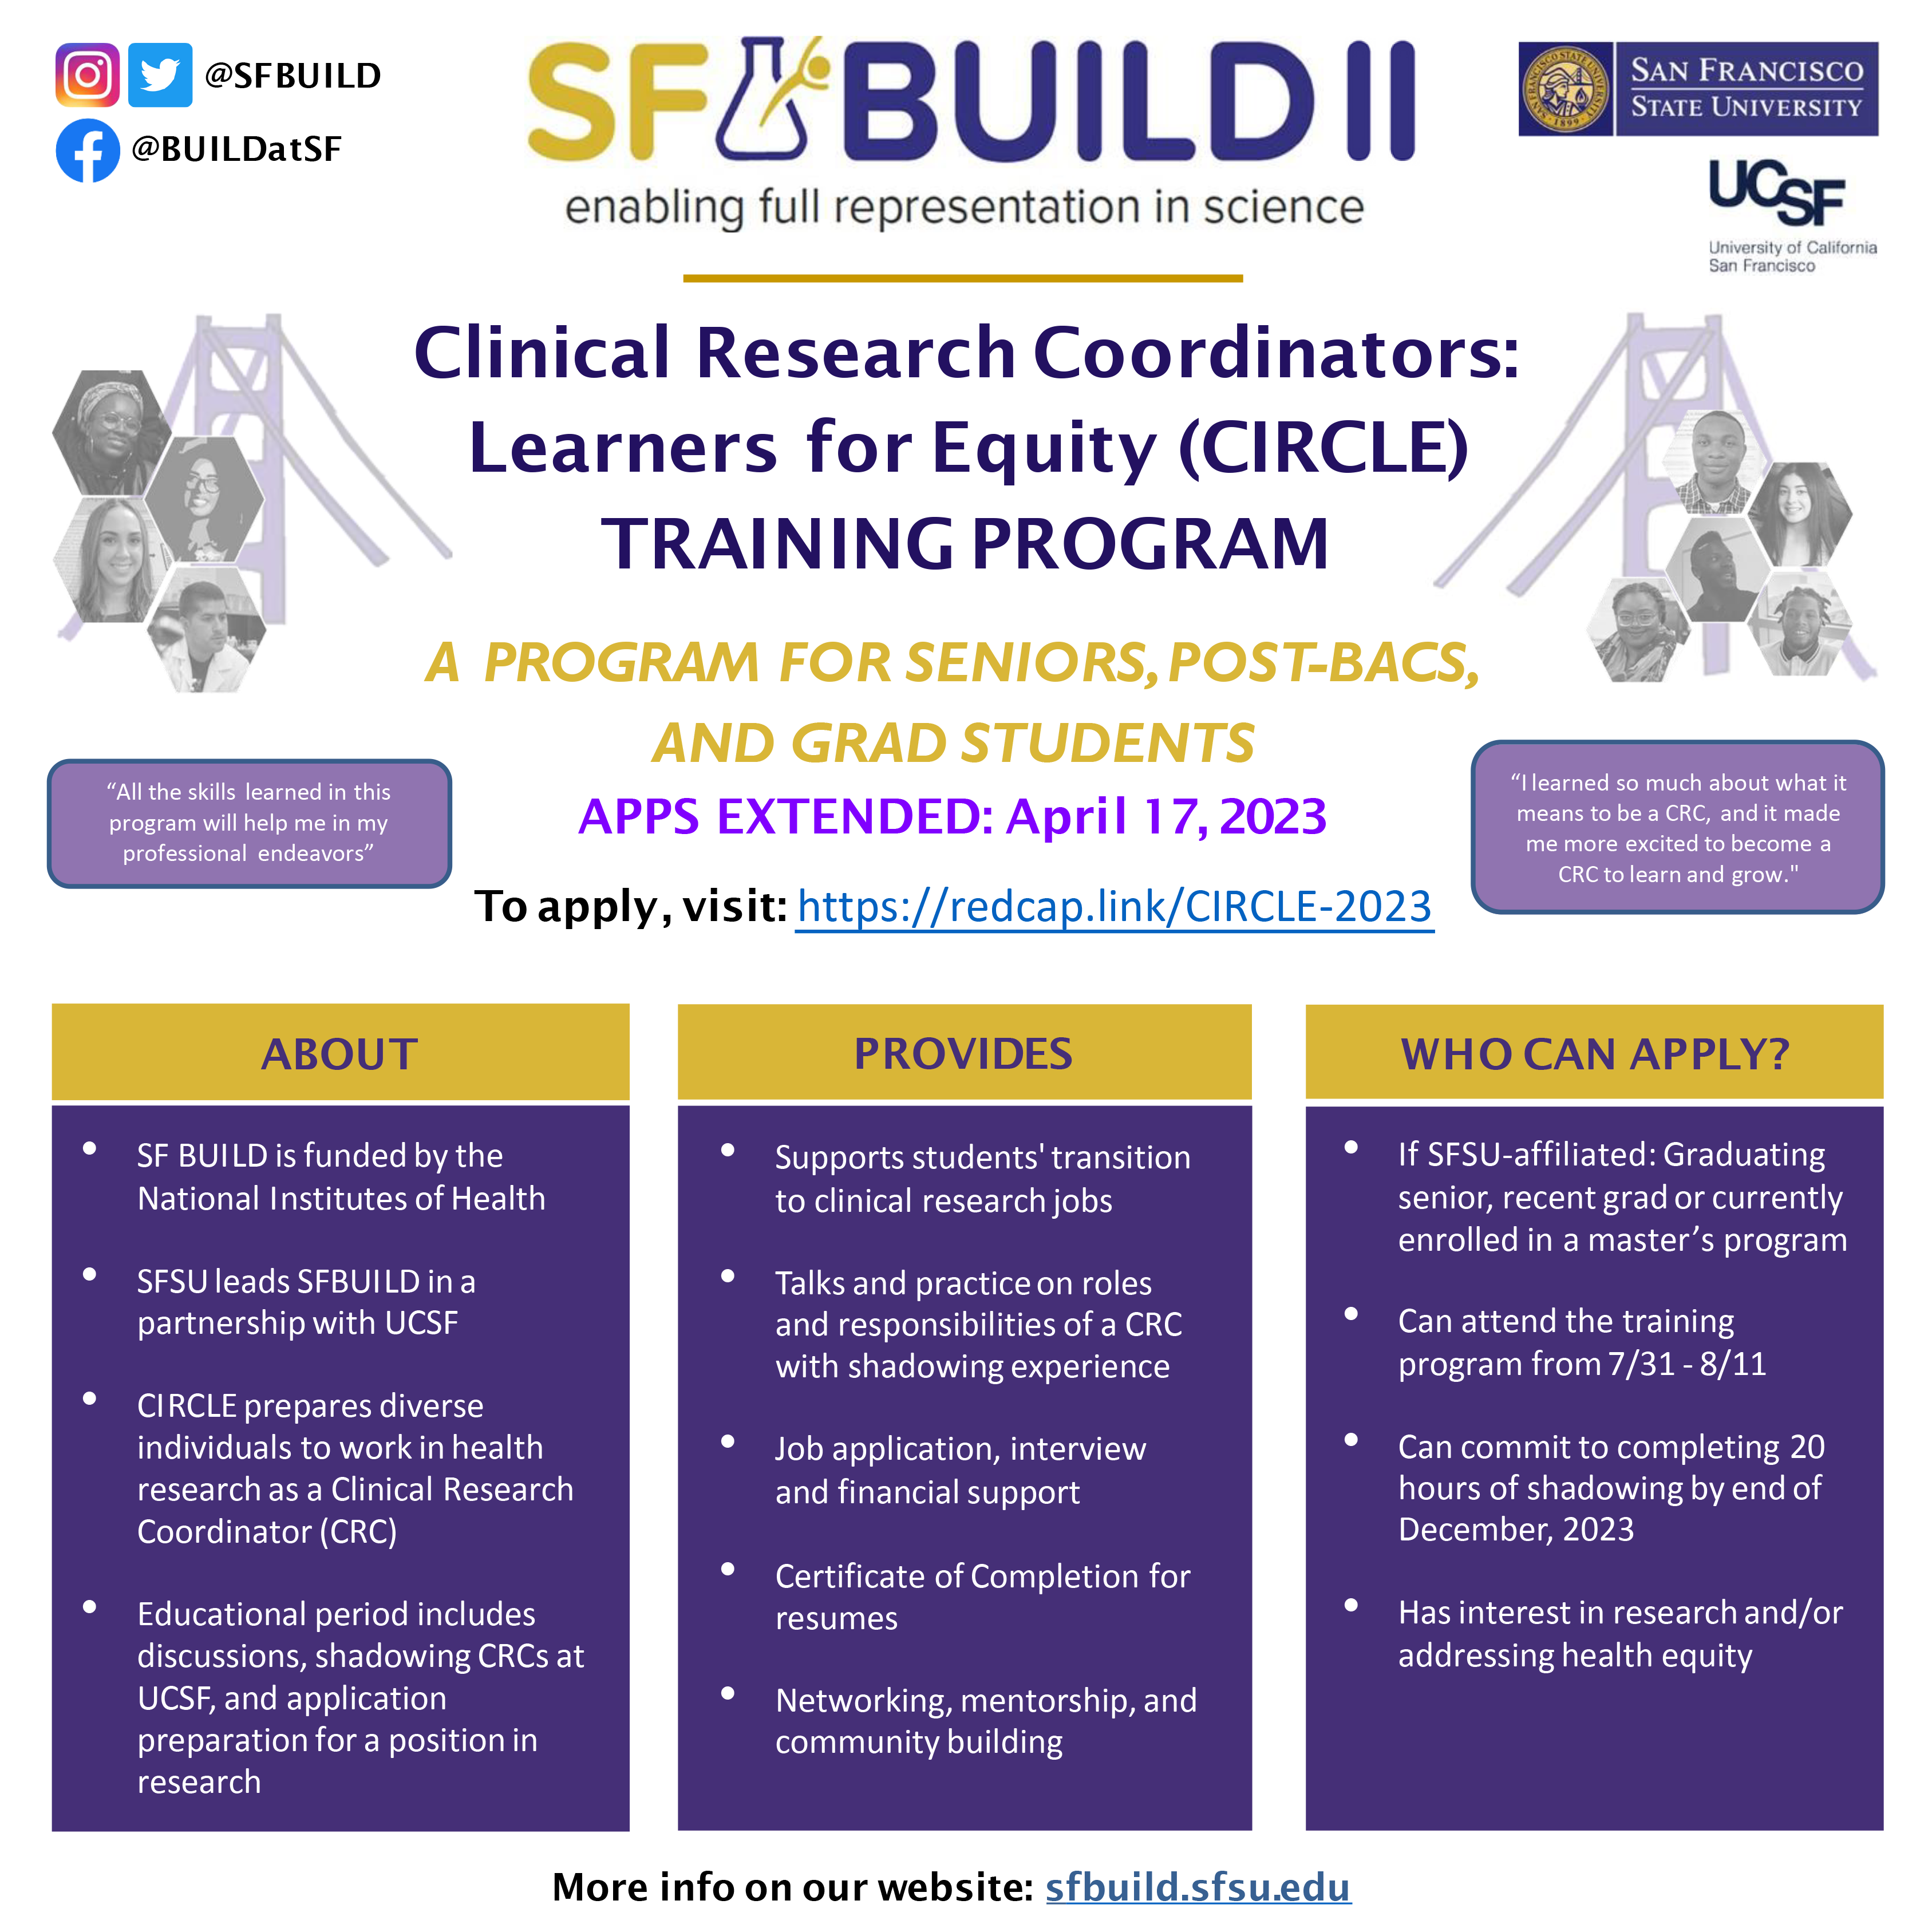 Program flyer for SF BUILD's CIRCLE Program